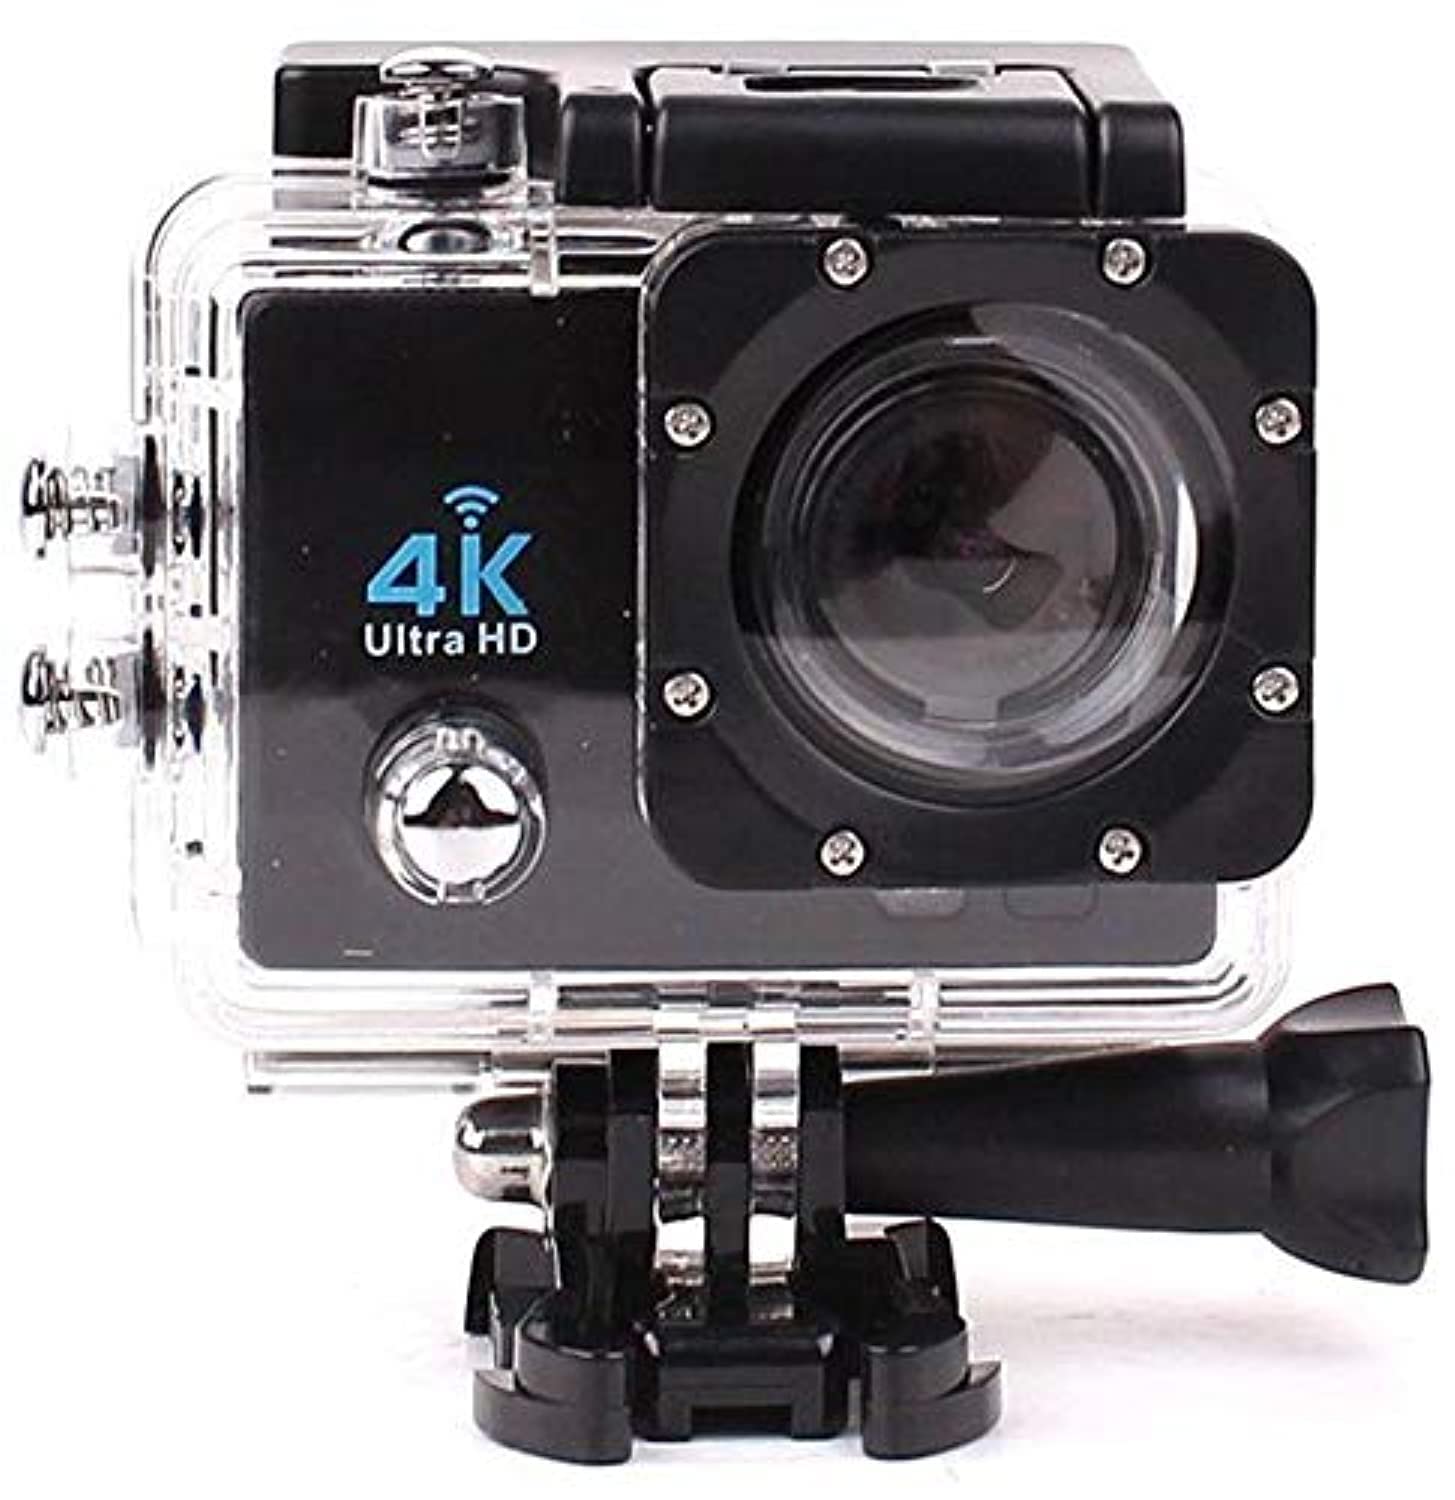 كاميرا اكشن رياضية فل اتش دي 4K سبورتس واي فاي 1080P بشاشة ال سي دي 2 انش مضادة للماء للاستخدام الخارجي SJ4000